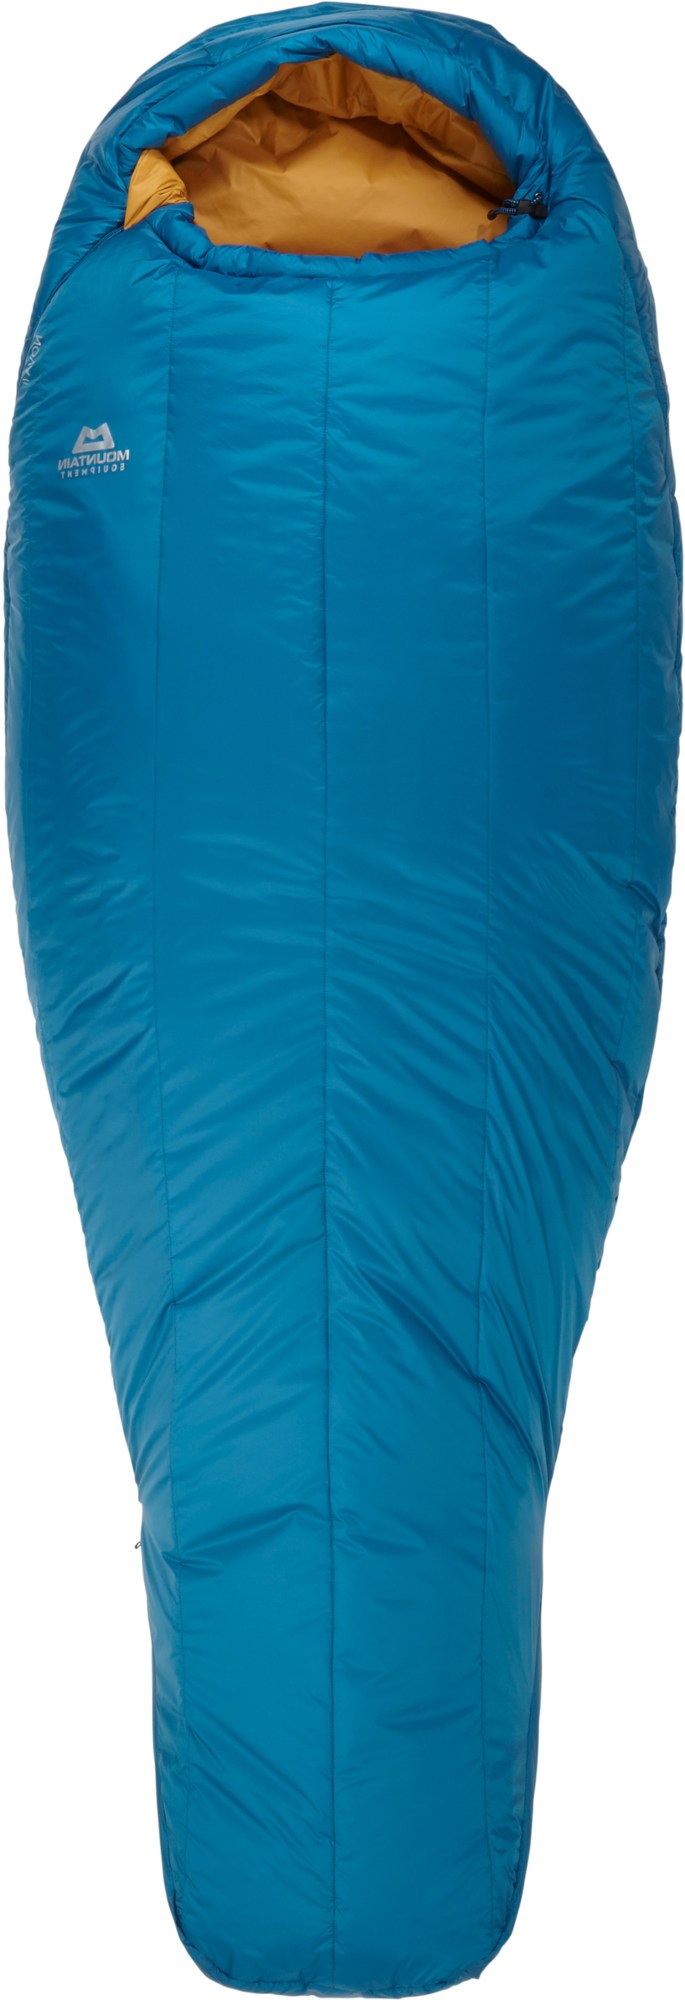 Спальный мешок Nova II — женский длинный Mountain Equipment, синий